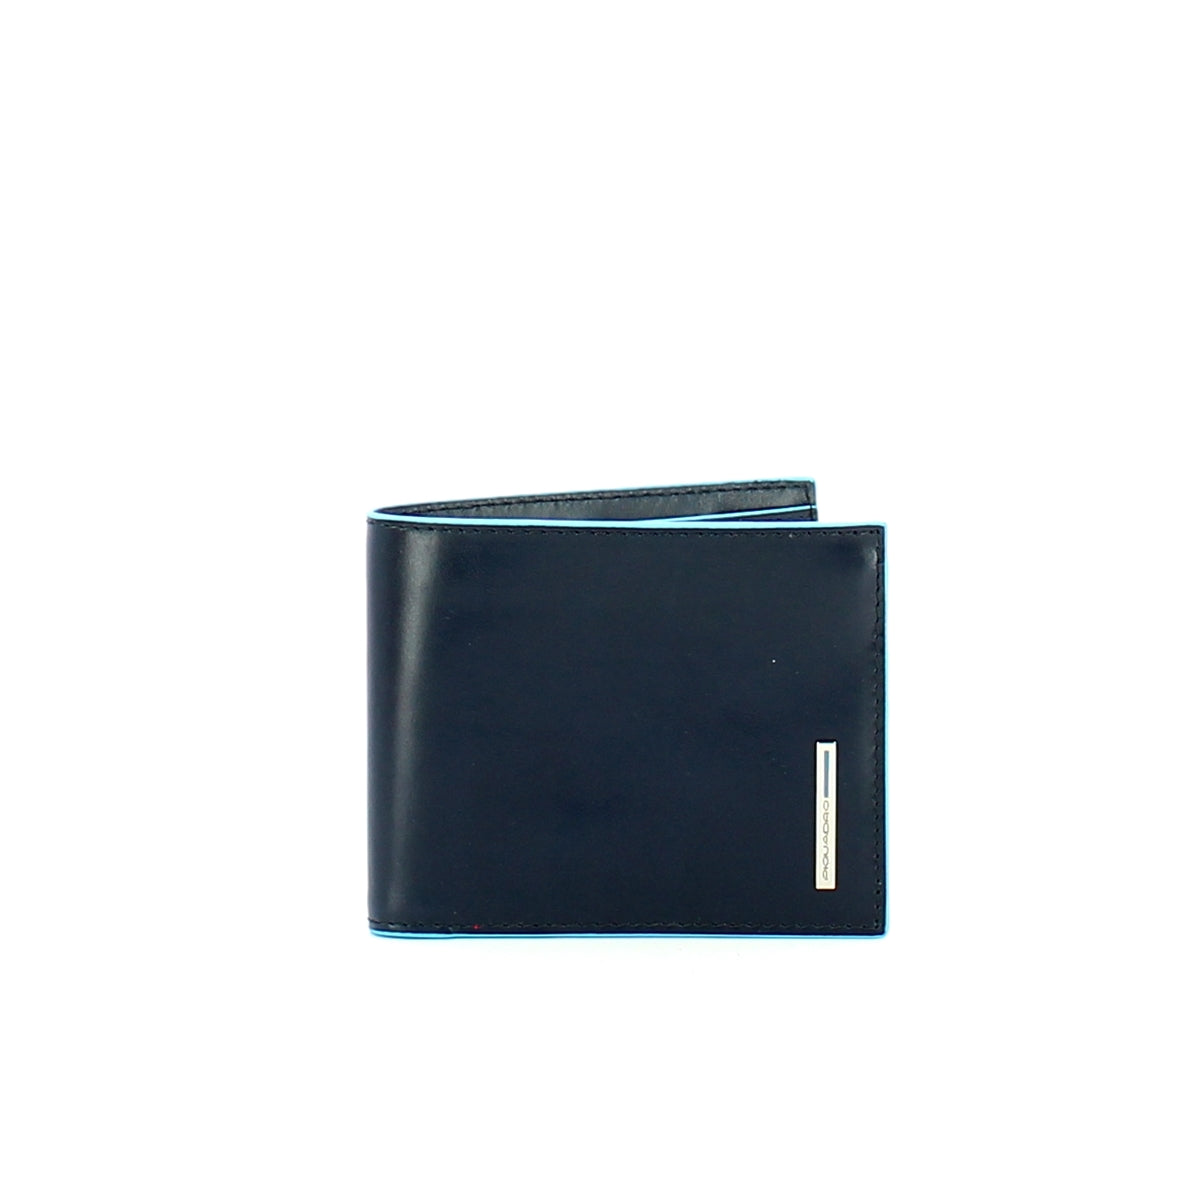 Piquadro -Portafoglio Porta ID Rimovibile Blue Square -PU3891B2R -BLU2